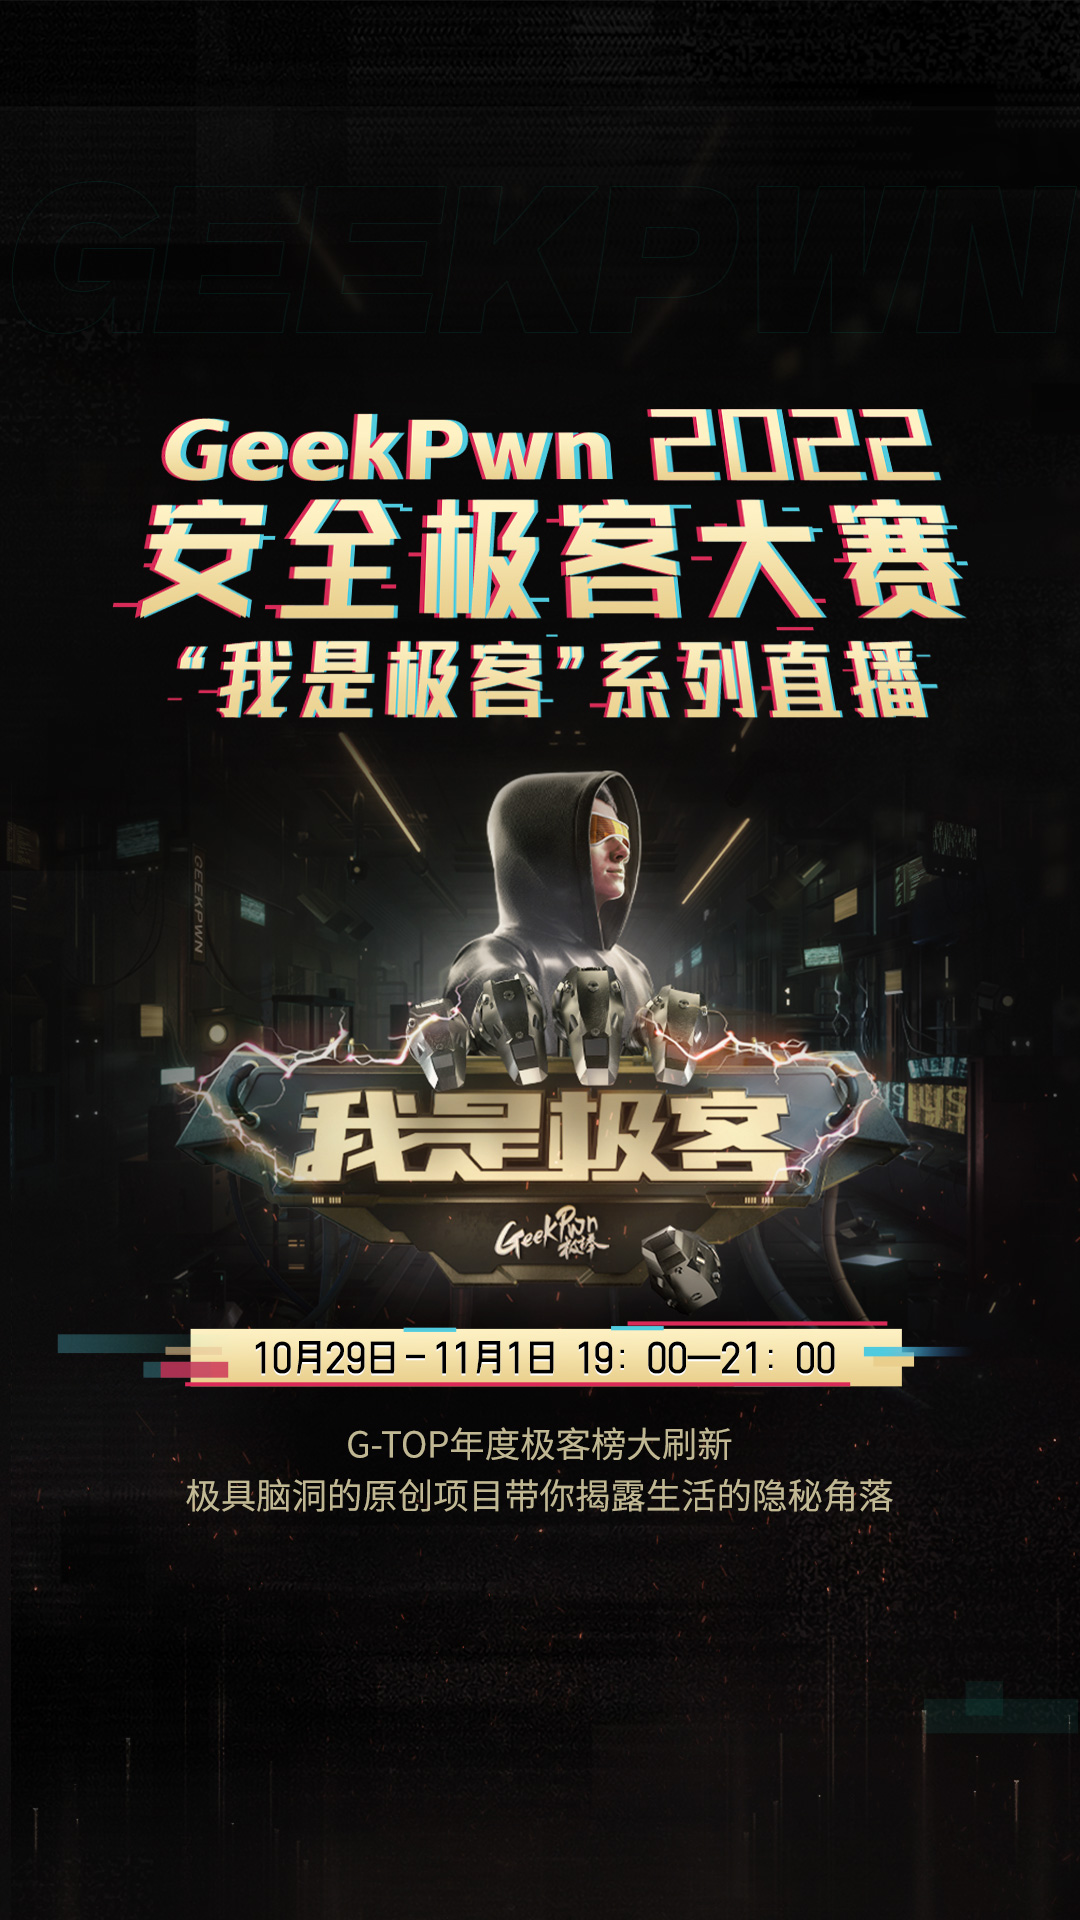 【10月29日-11月1日】GeekPwn 2022 大赛实况直播来了